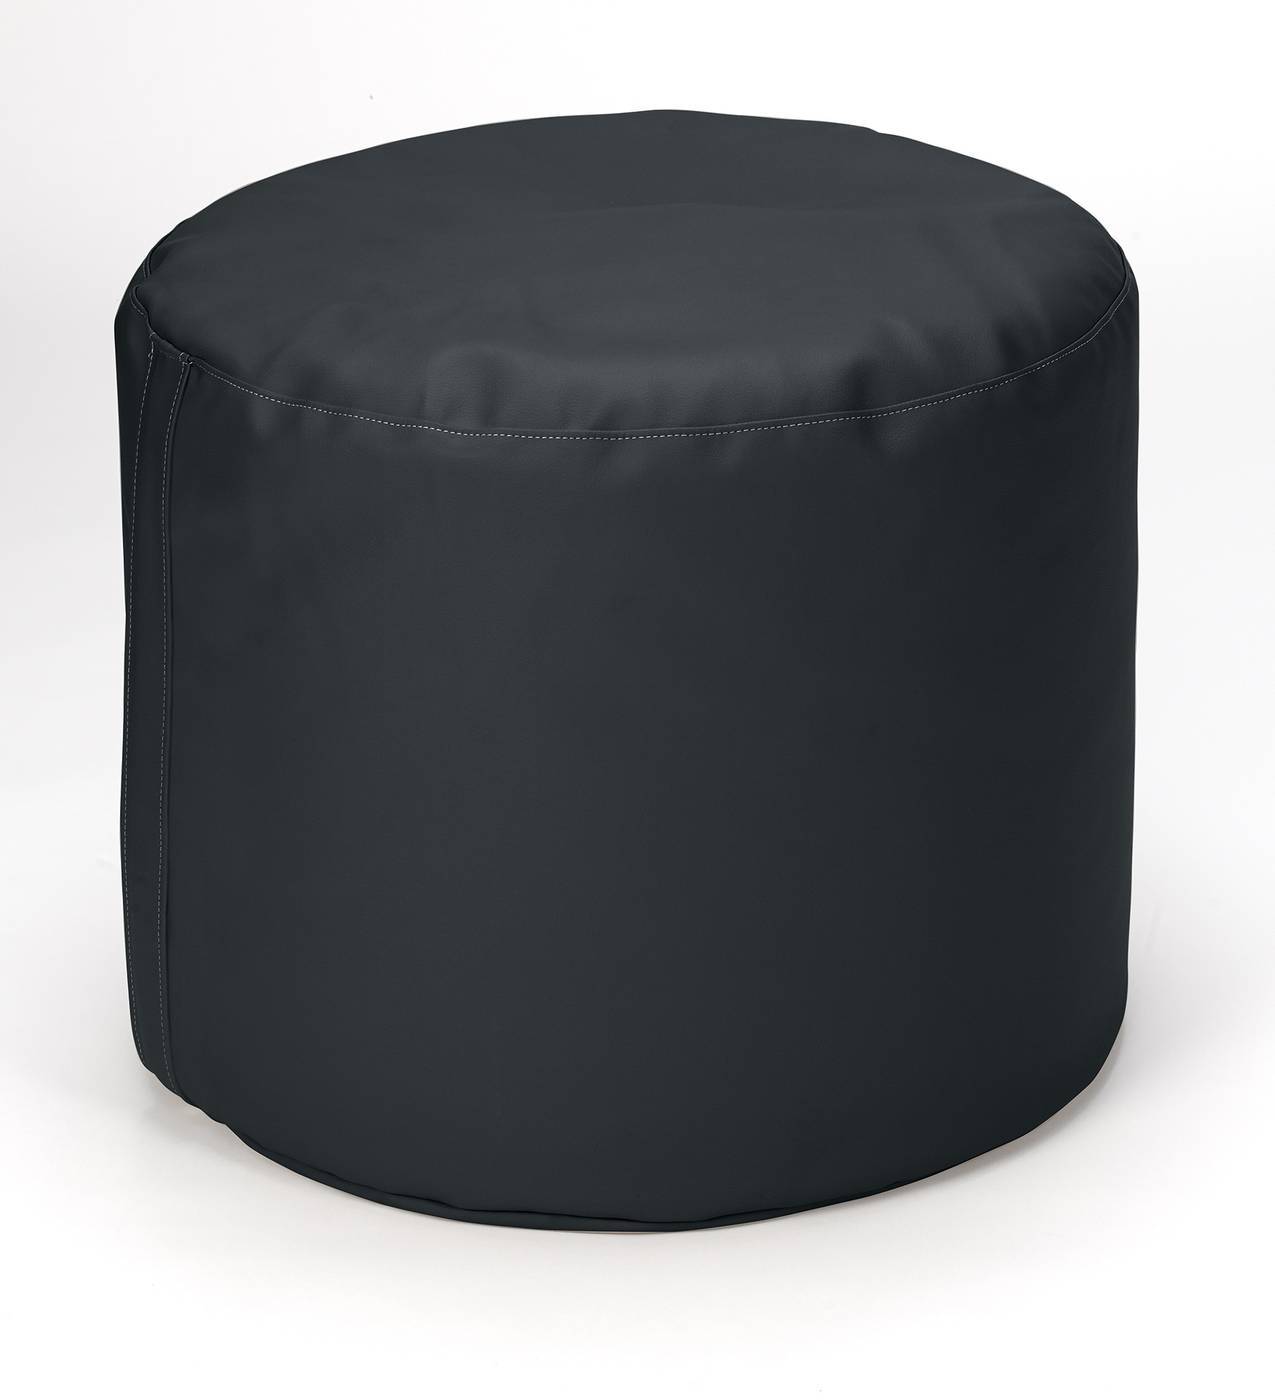 Pouf redondo para dormitorio, tapizado en polipiel de alta calidad color negro